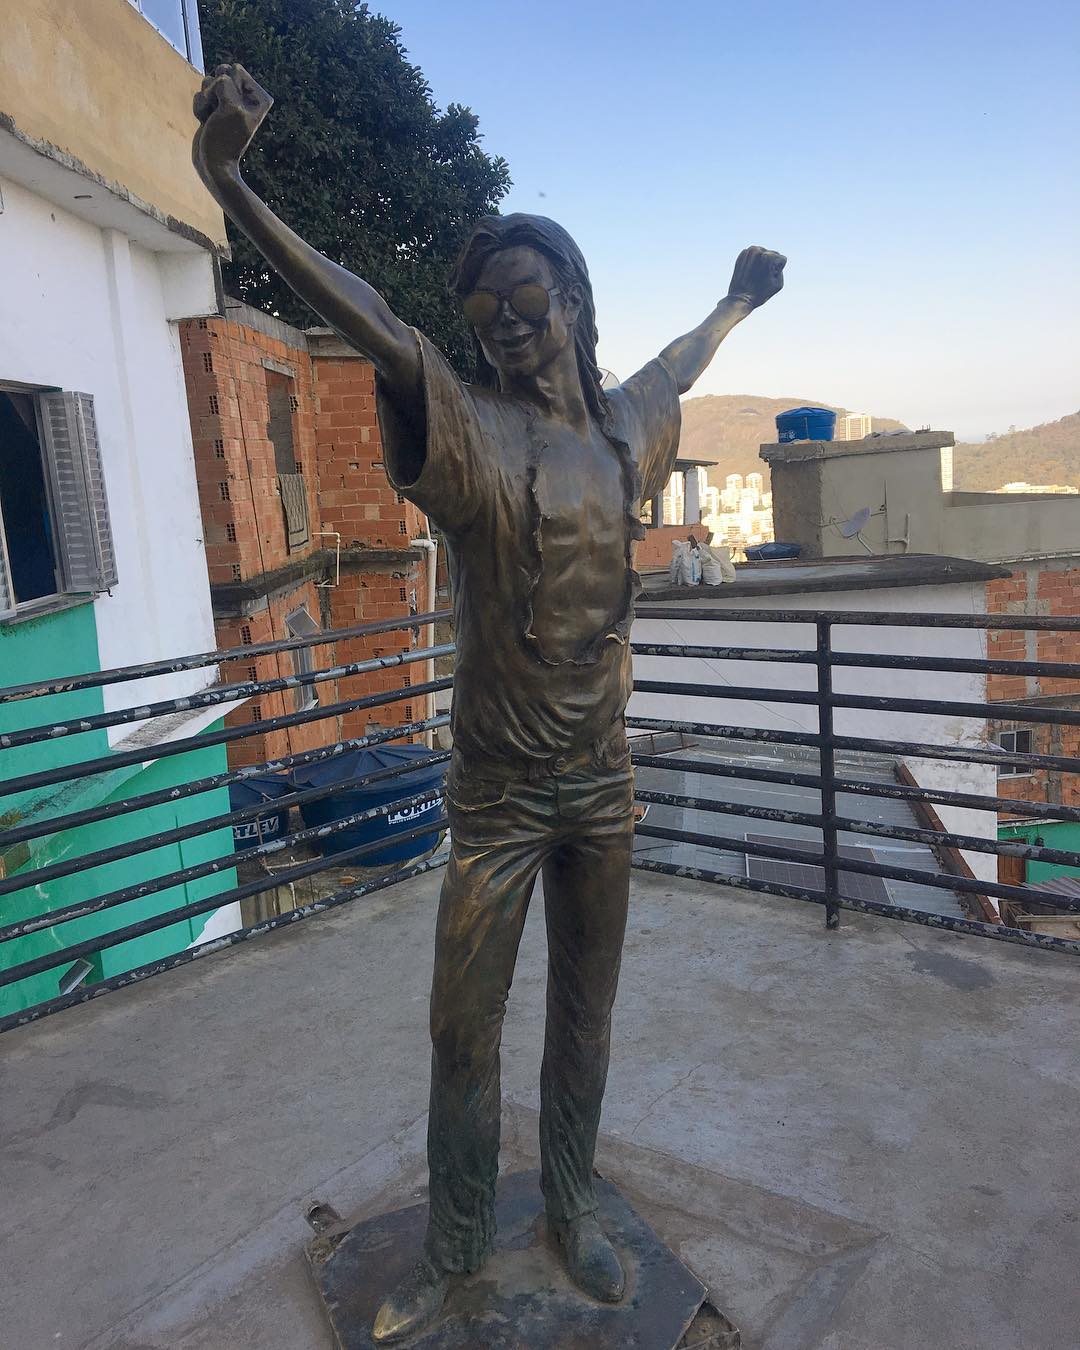 Brazilska favela Santa Marta ima, recimo, posebnu vezu s Michaelom Jacksonom. Naime, Spike Lee je tamo snimio spot za Jacksonovu pjesmu They don't care about us, nakon što je Jackson umro 2009. godine. U toj faveli je ubrzo nakon njegove smrti postavljen i ovaj kip. Dosta strašno.
